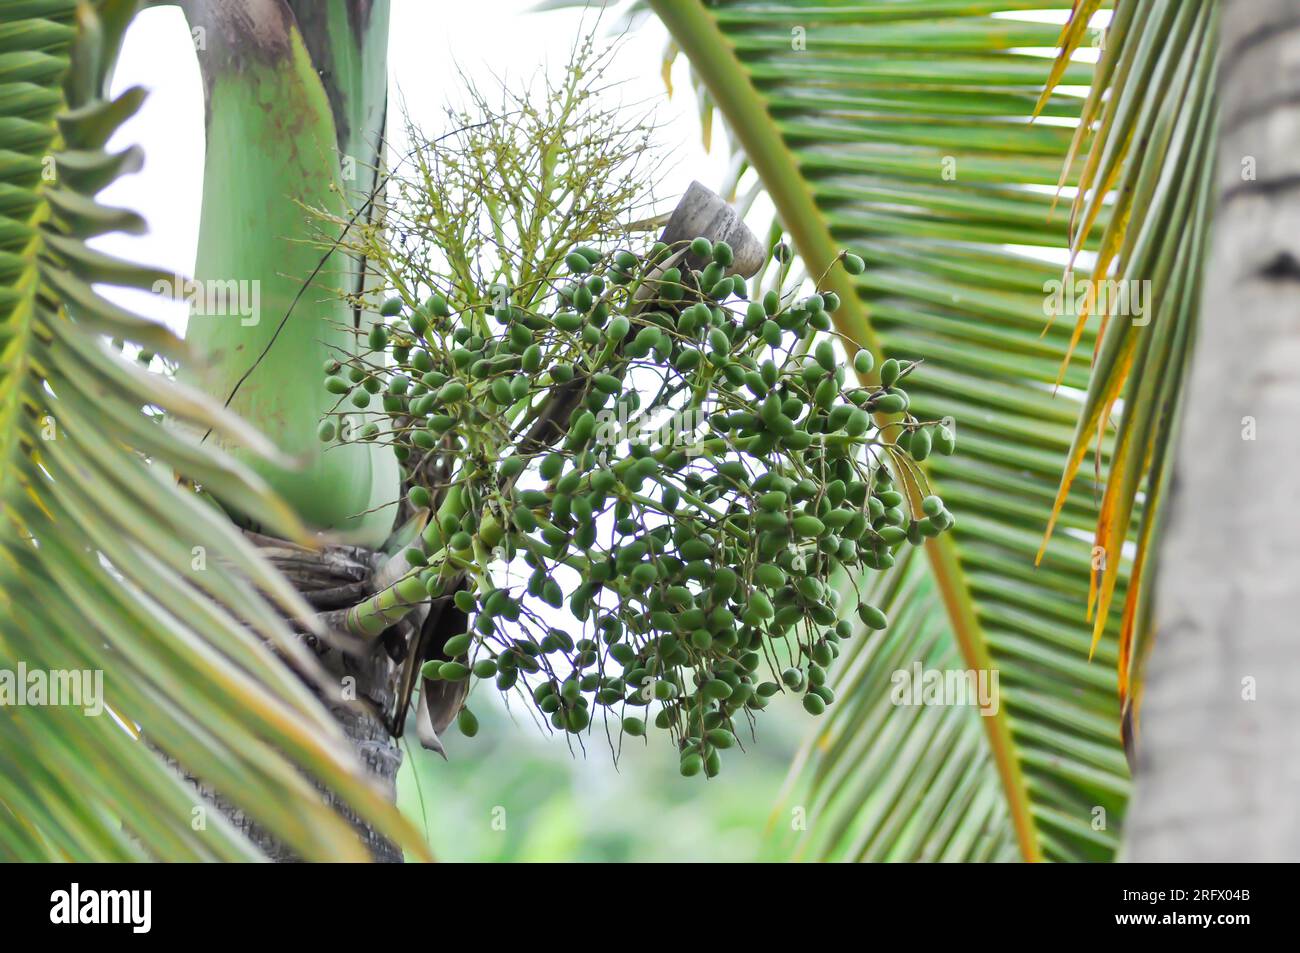 Roystonea regia ,Cuban royal palm or ARECACEAE or palm seed Stock Photo